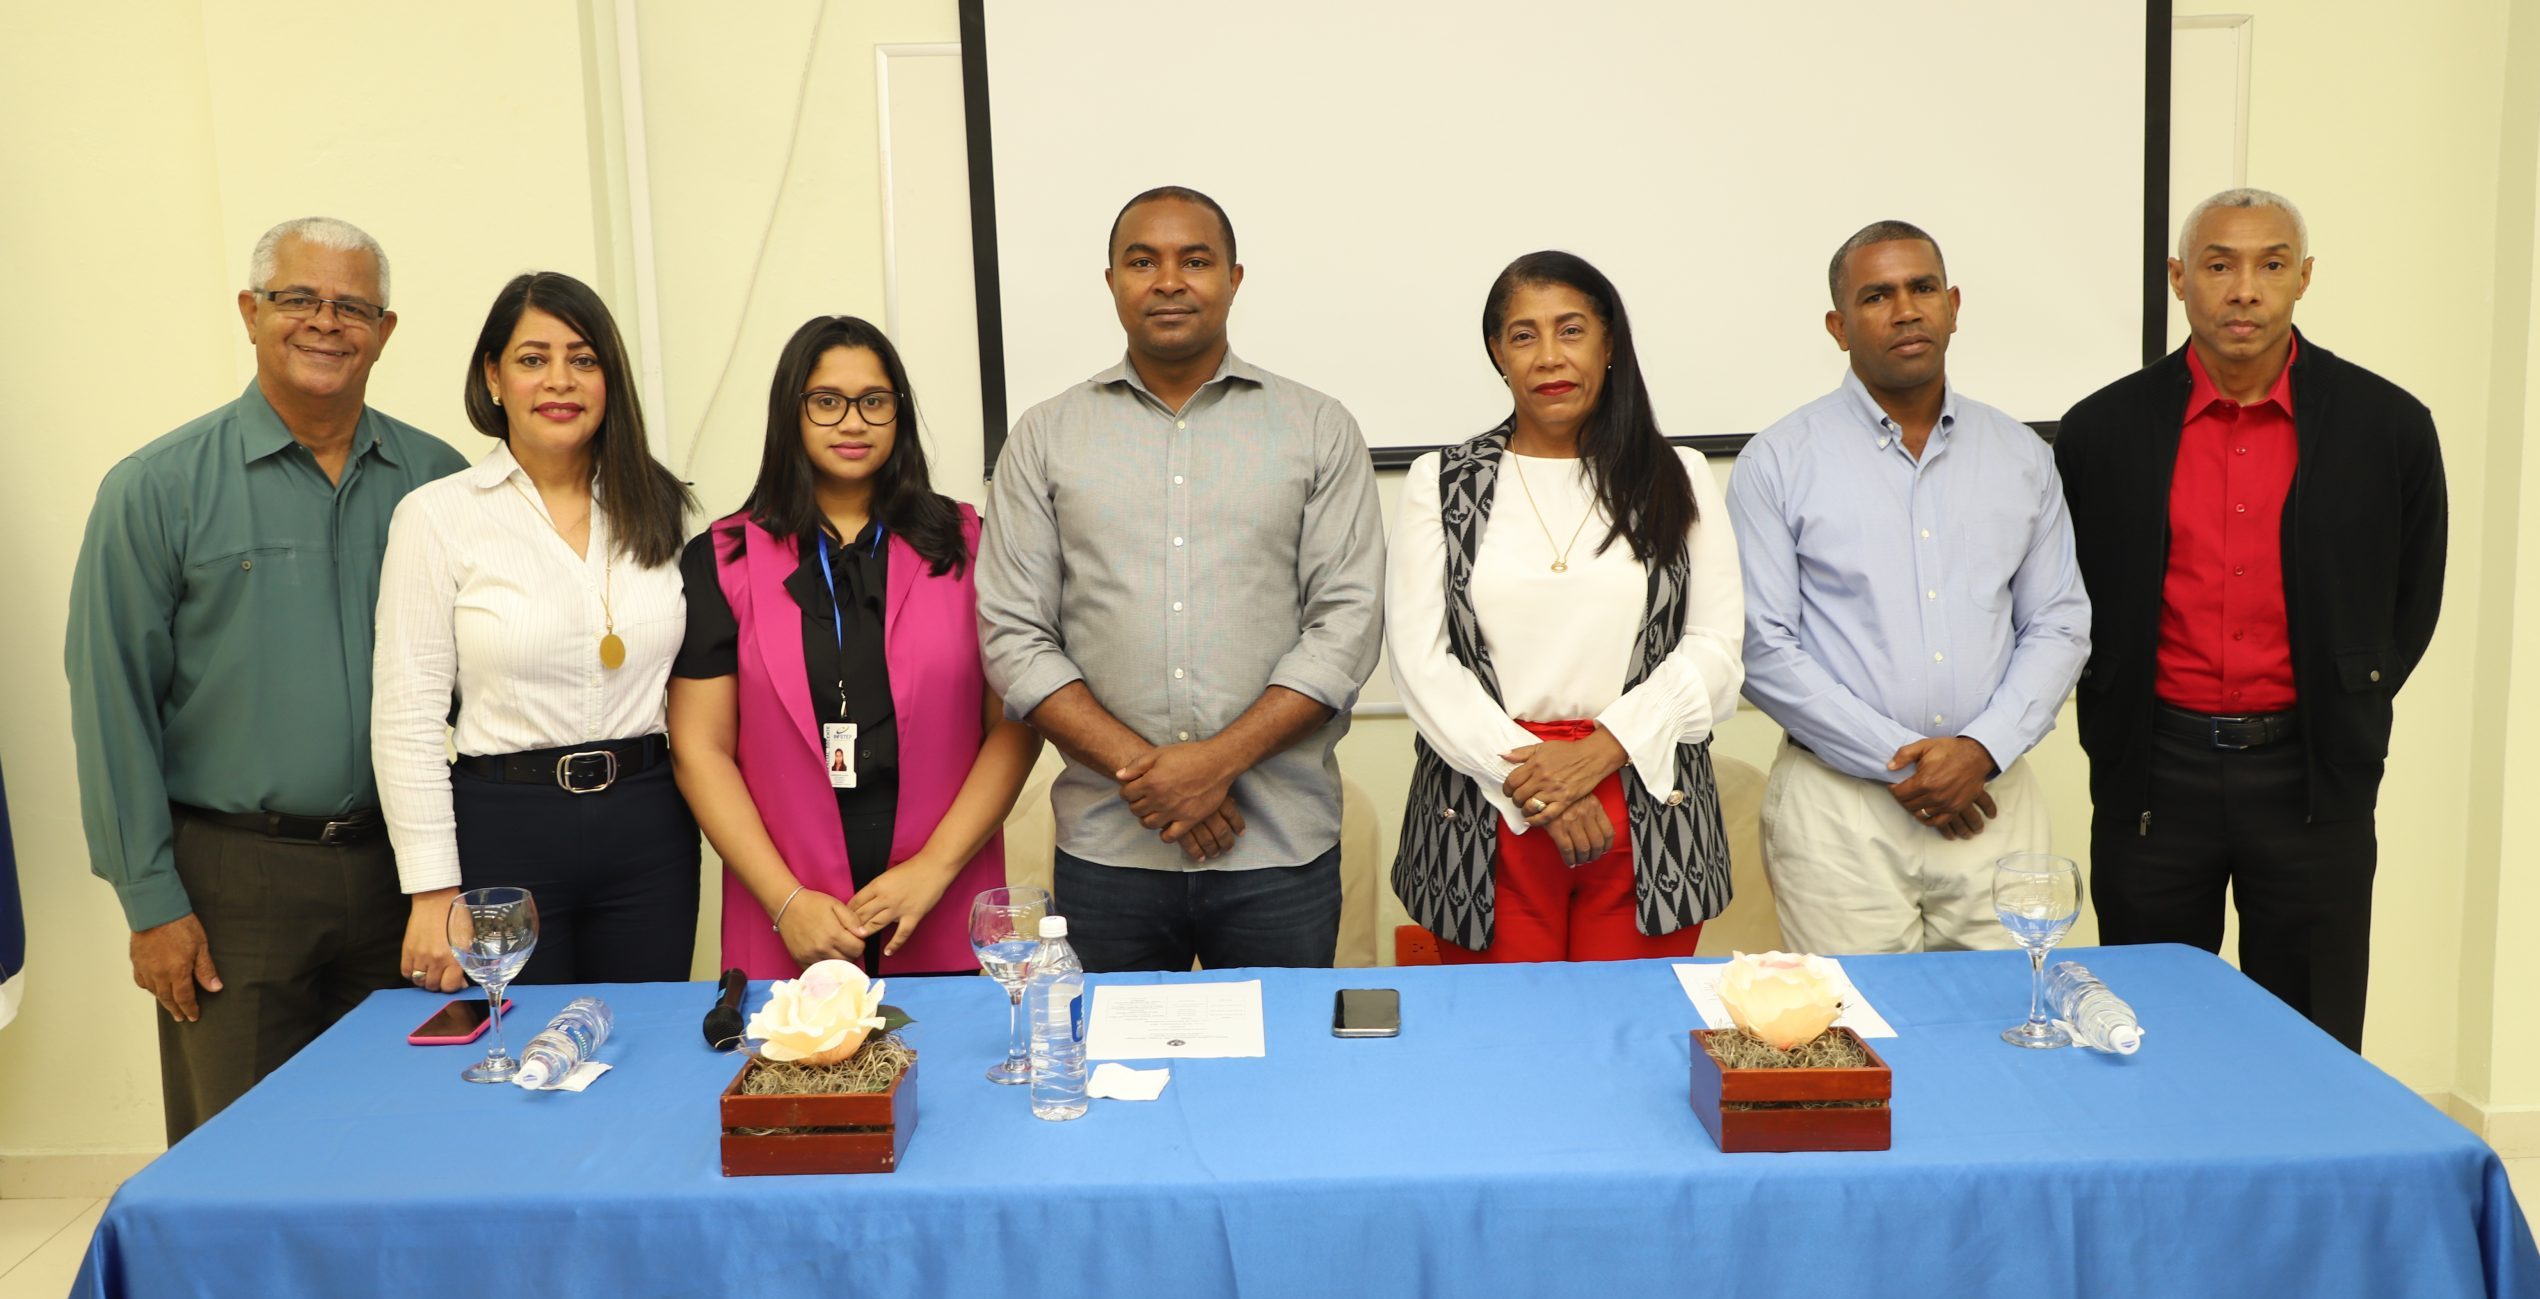 UASD Recinto San Juan realiza apertura de curso “Emprendedor para PYMES”